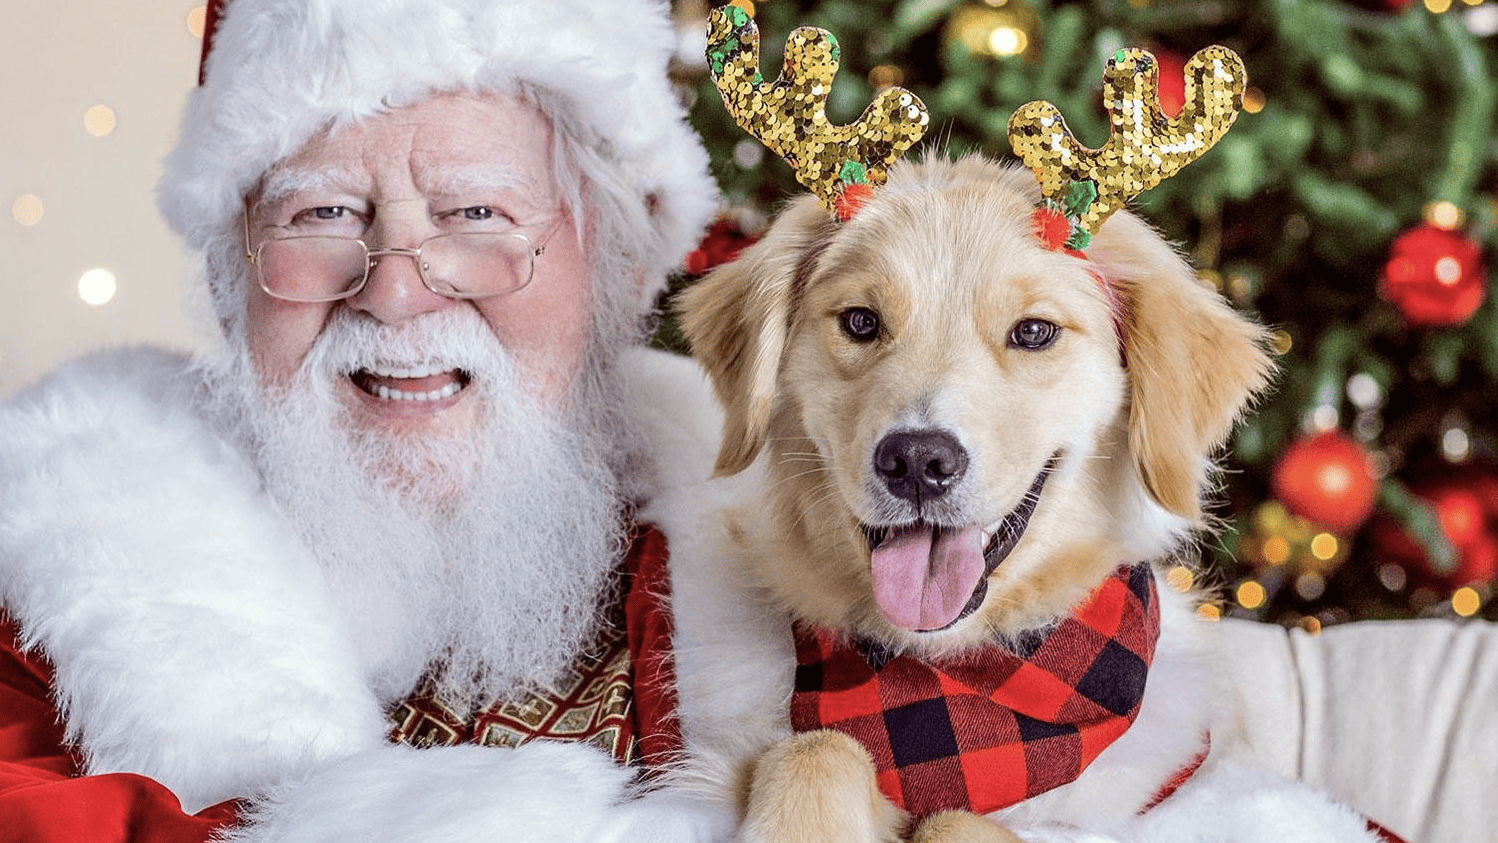 Santa with happy dog